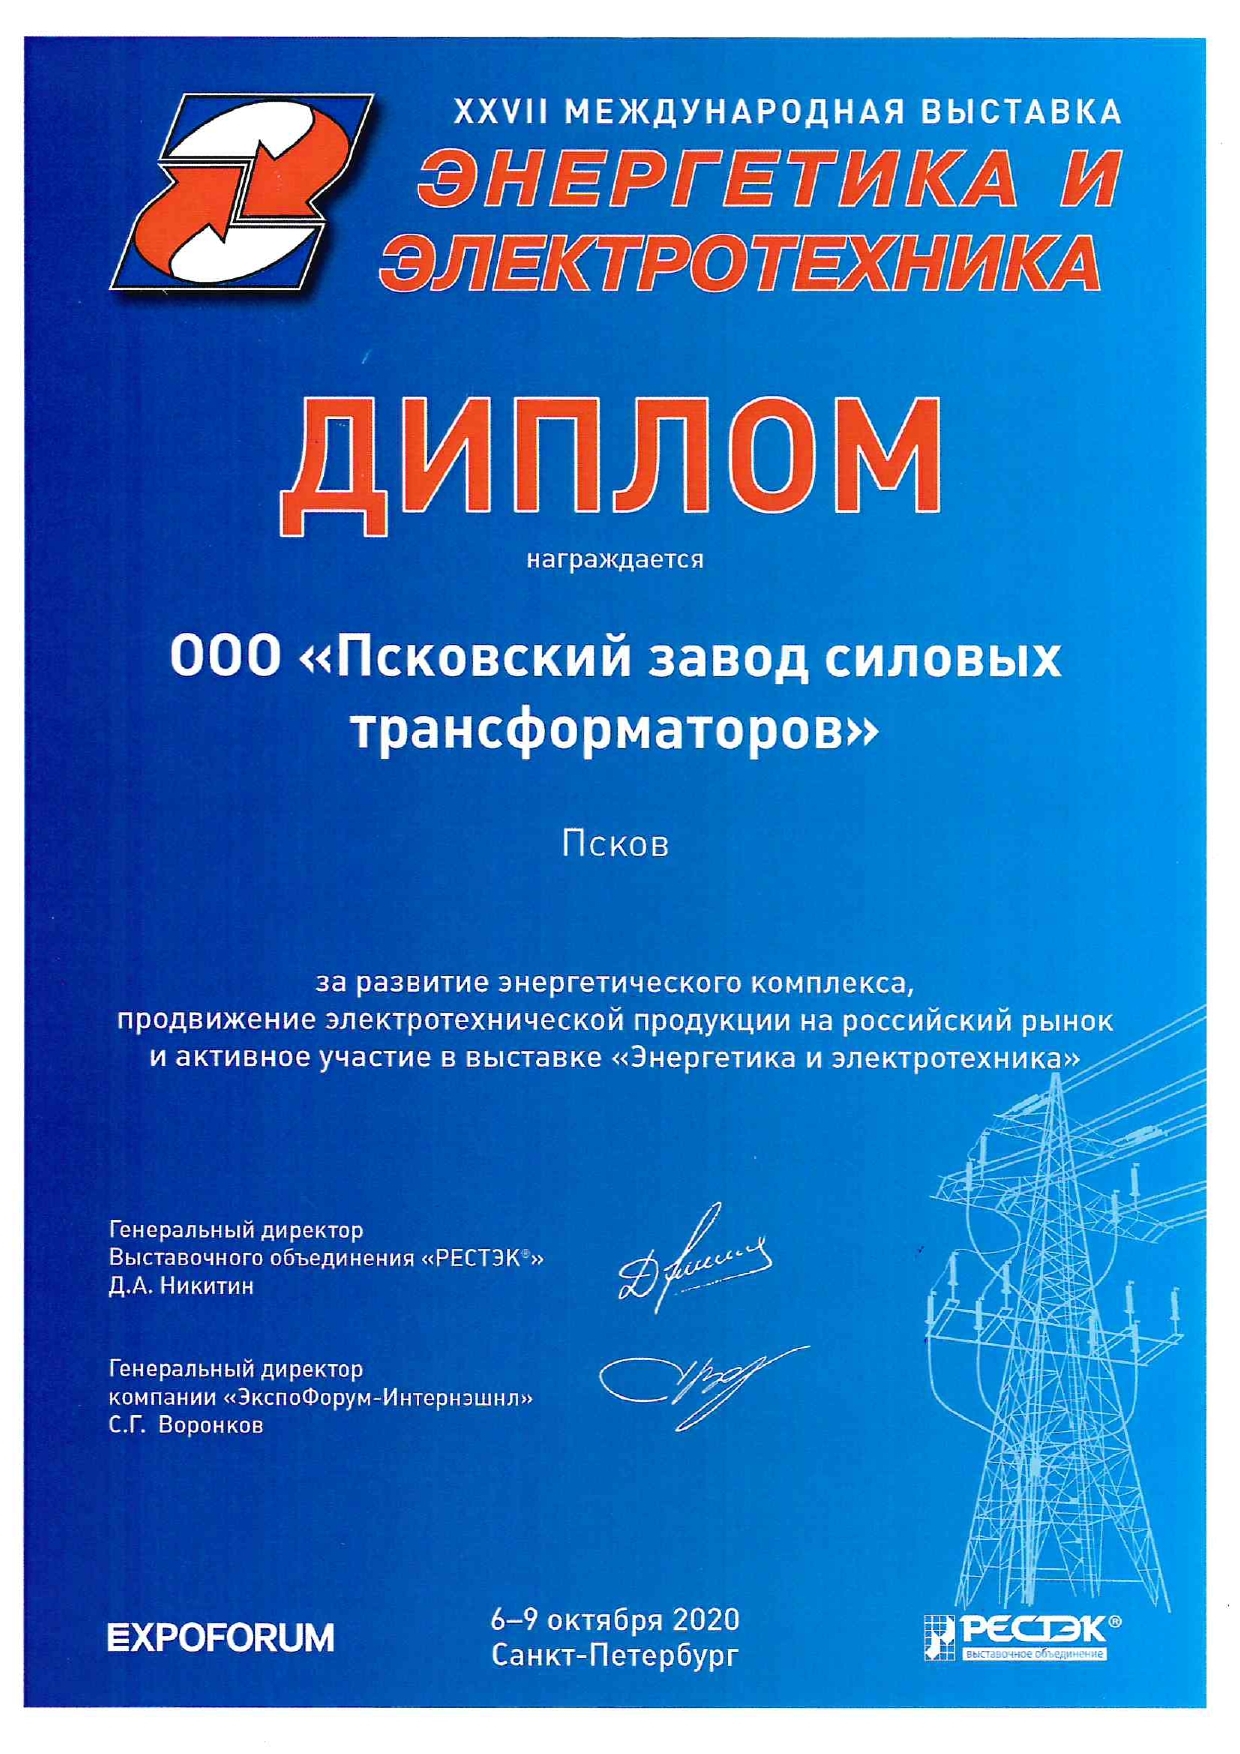 Псковский завод силовых трансформаторов принял участие в выставке "Энергетика и электротехника"